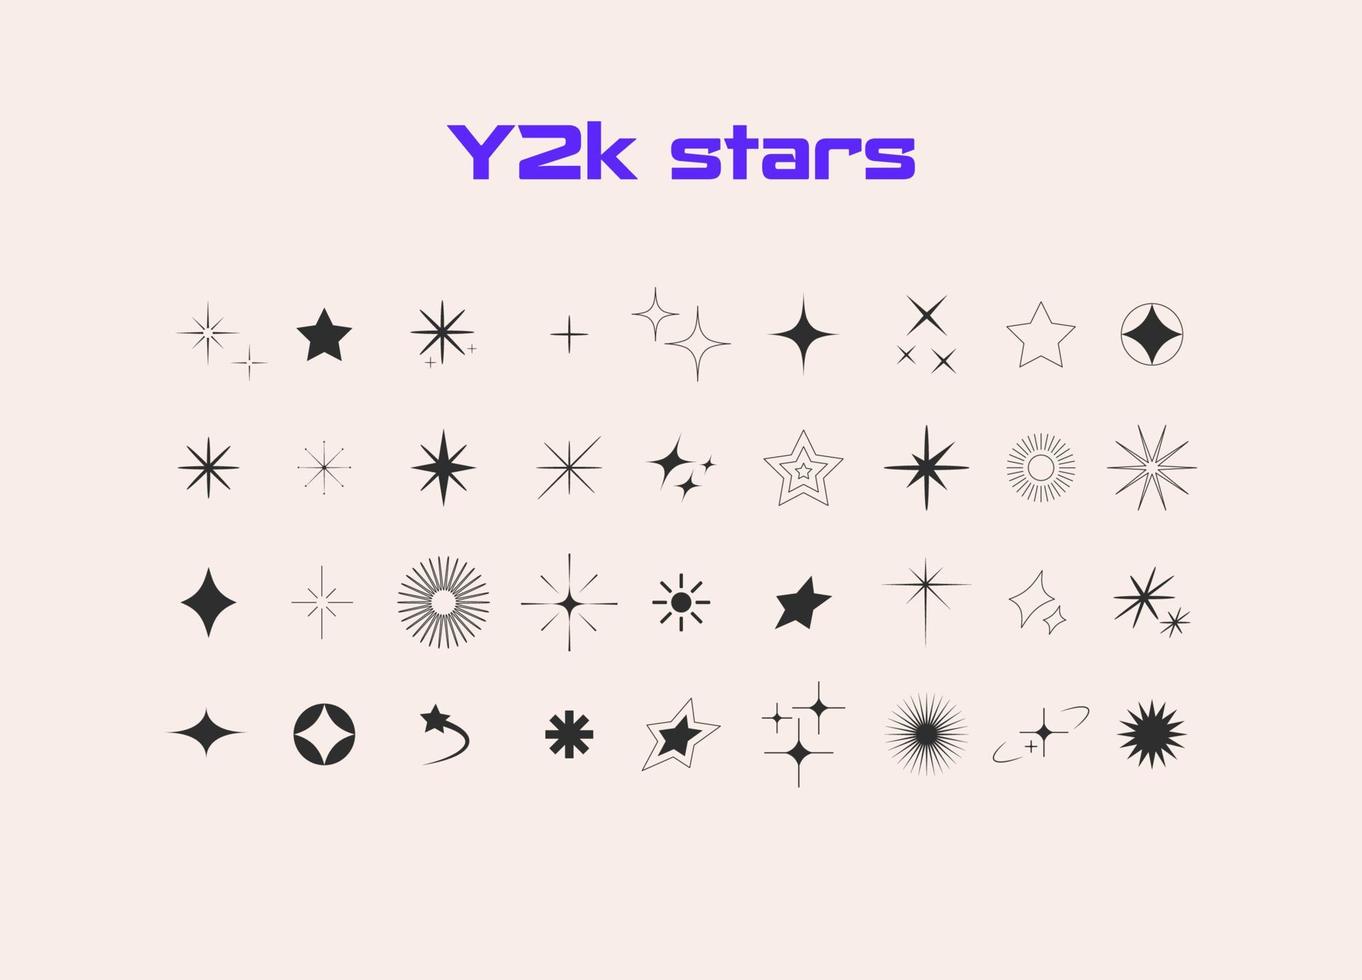 estetico y2k stile. stella, bling, esplosione di stelle, scintillare icone. retrò futuristico. vettore